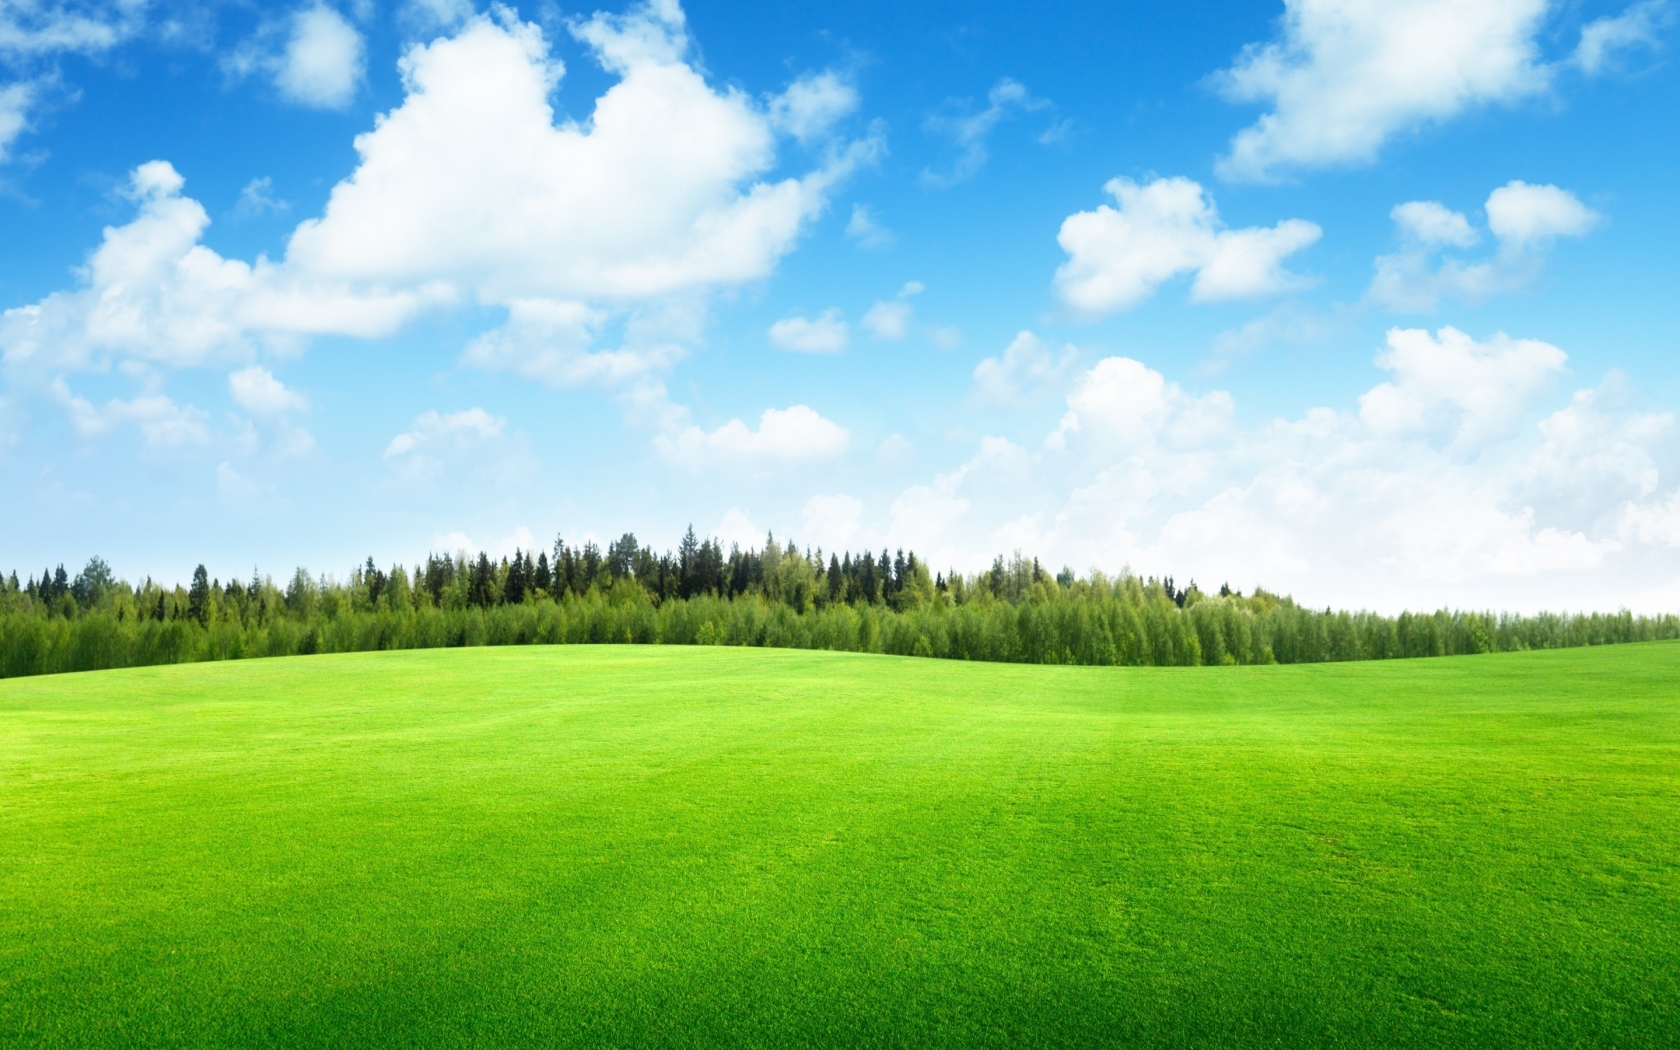 Beaufitul Green Grass Field for 1680 x 1050 widescreen resolution